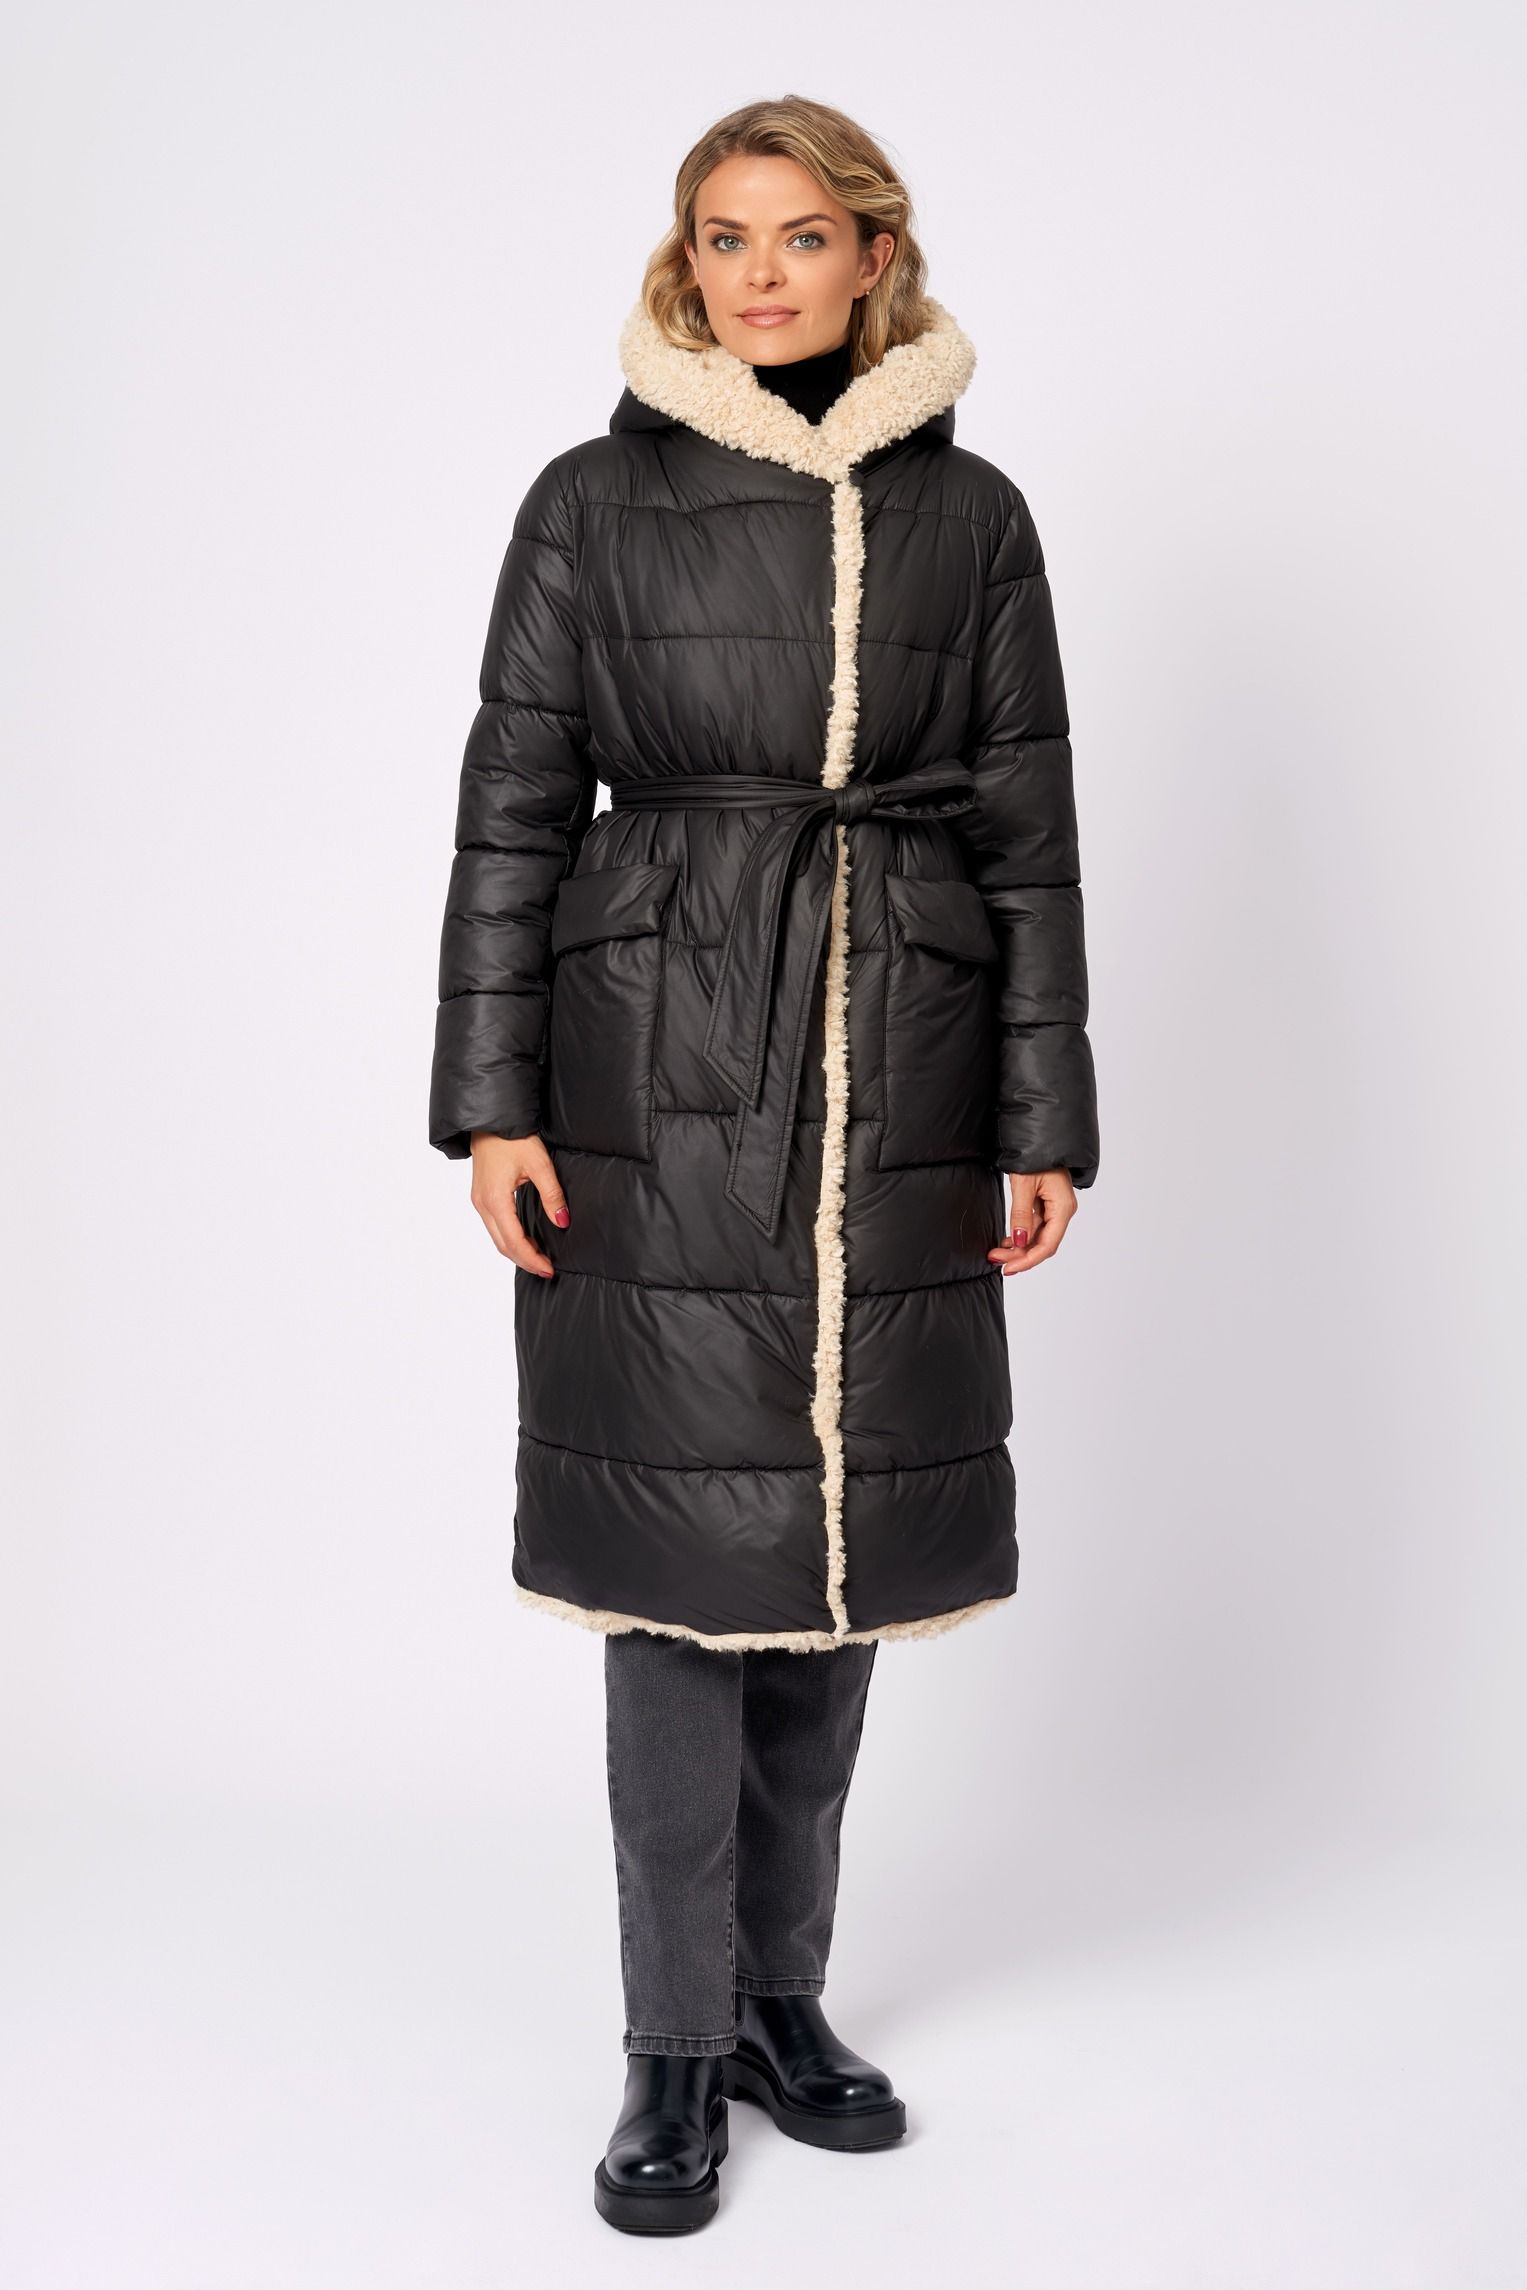 Пальто женское ElectraStyle КТ/ВО/П-32001 черное 46 RU